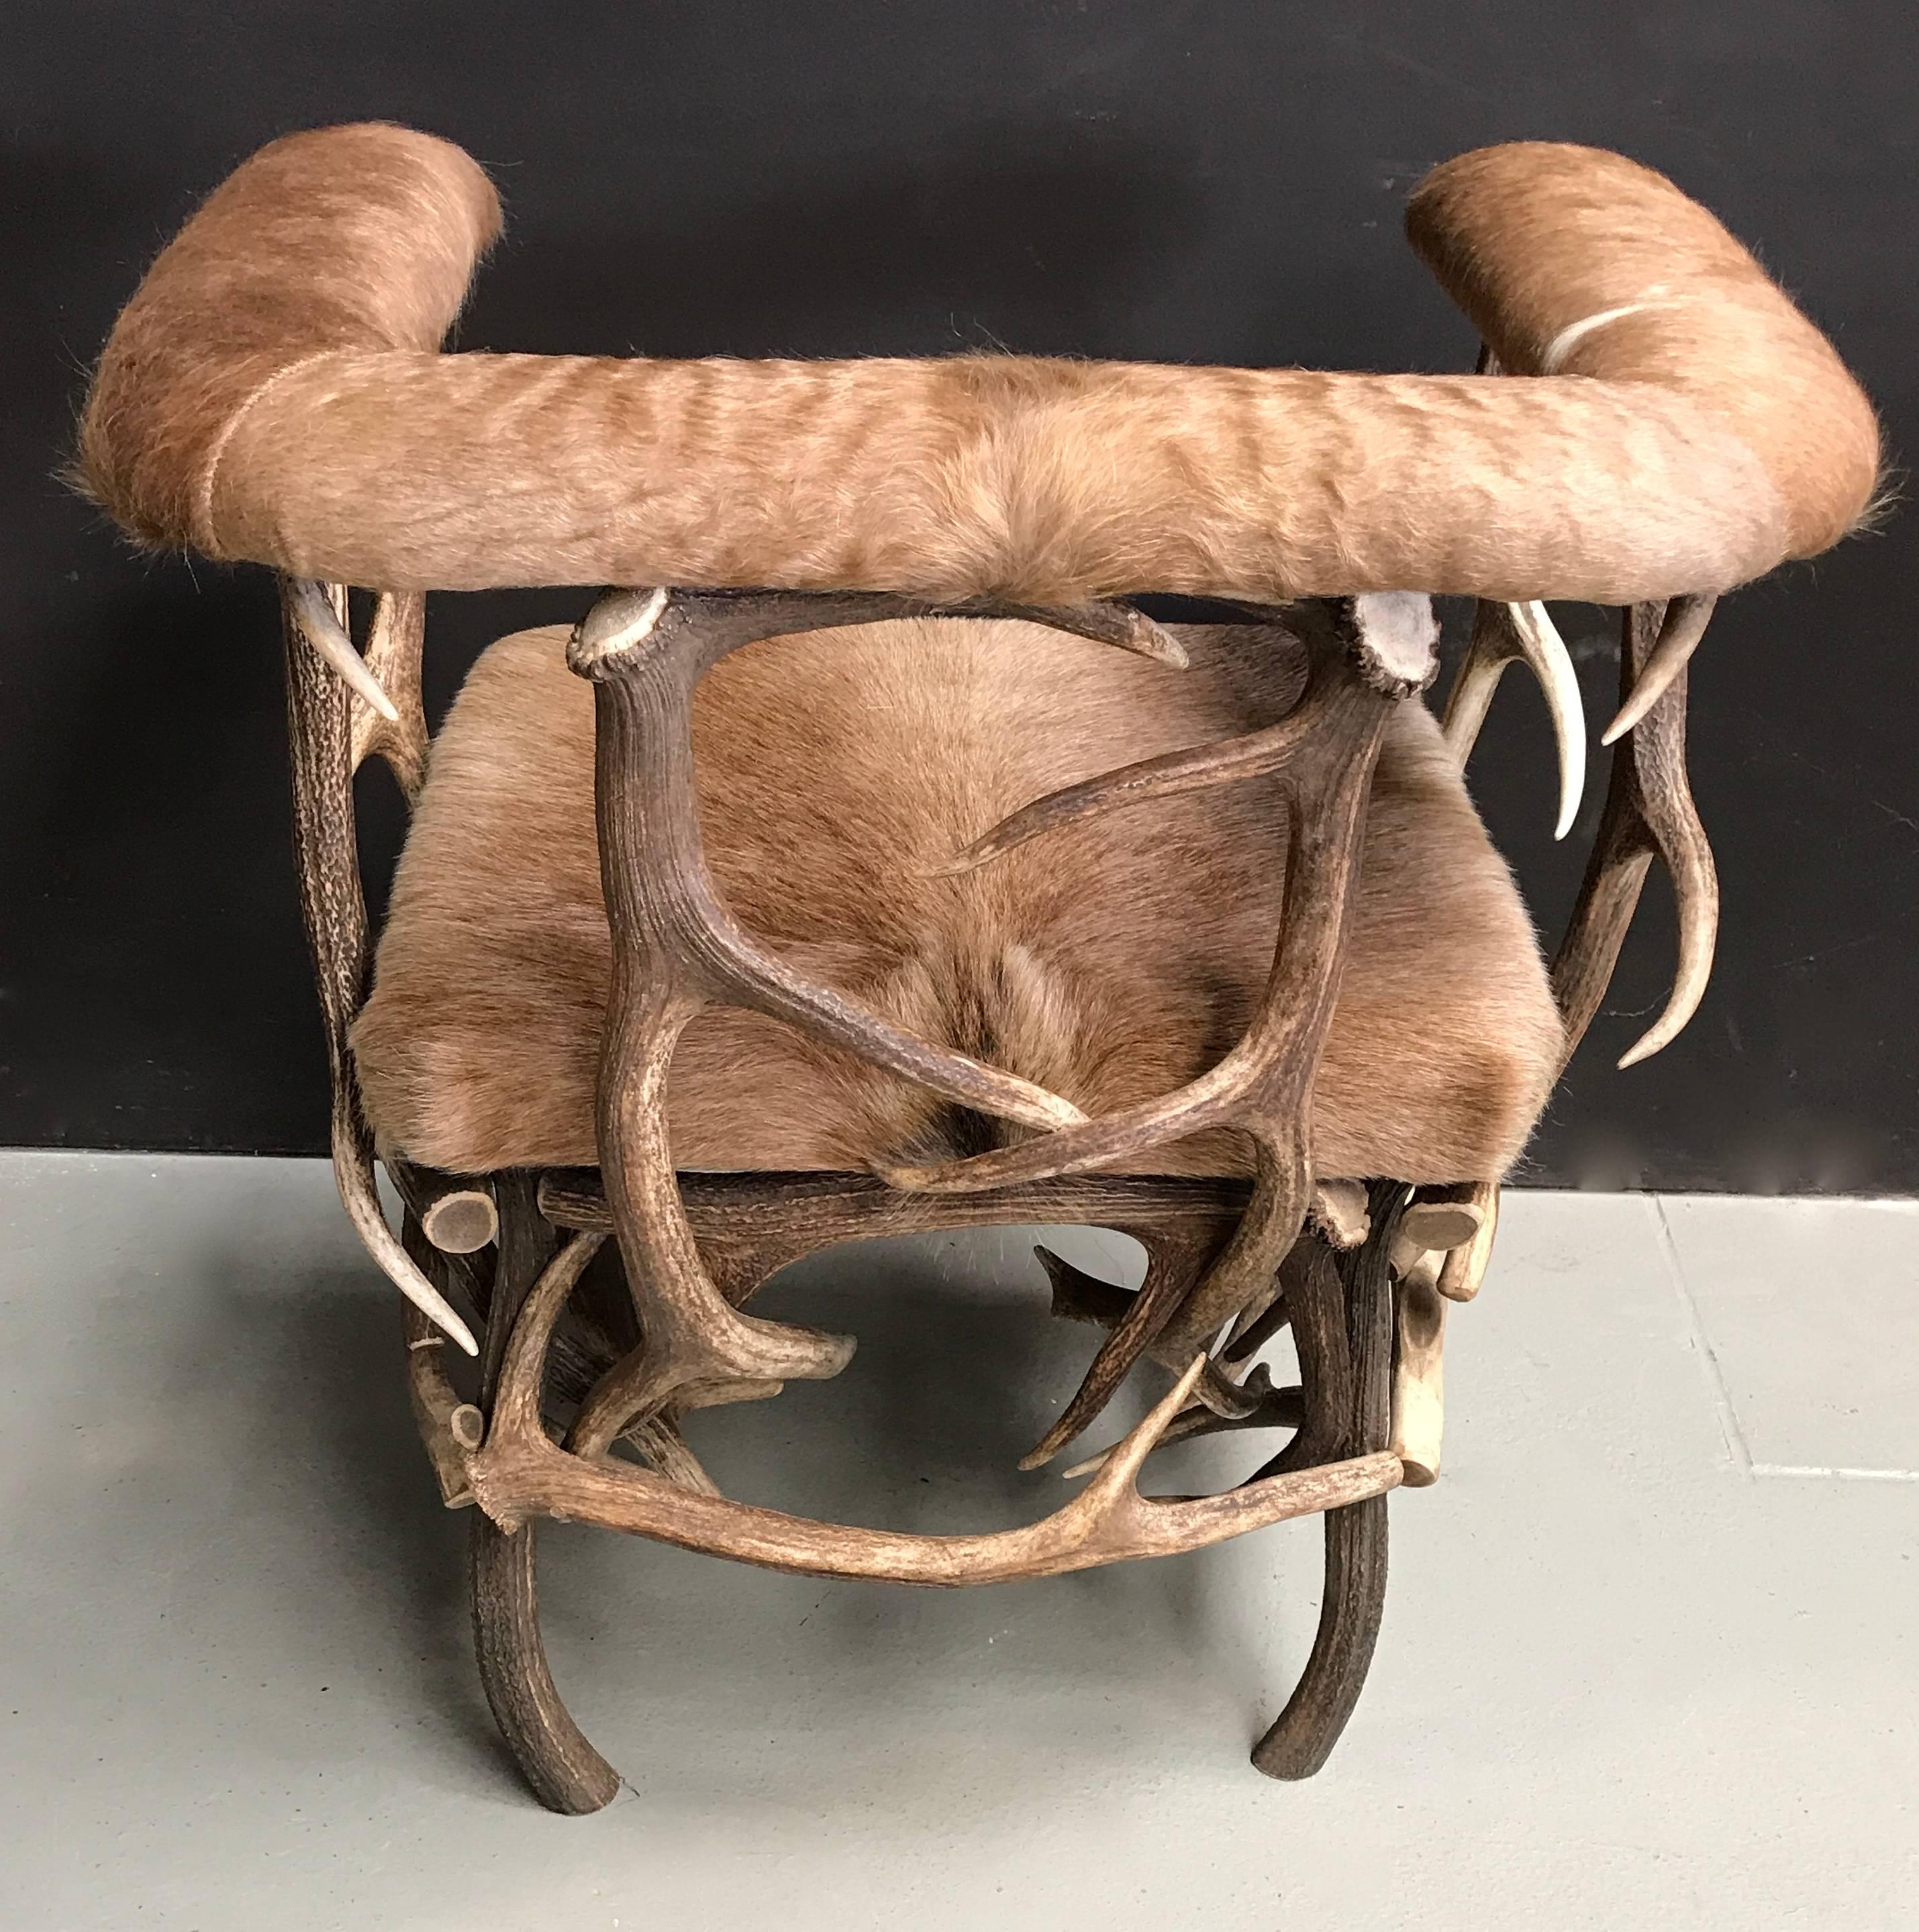 Contemporary Antler Chair with Ecuadorian Cowhide